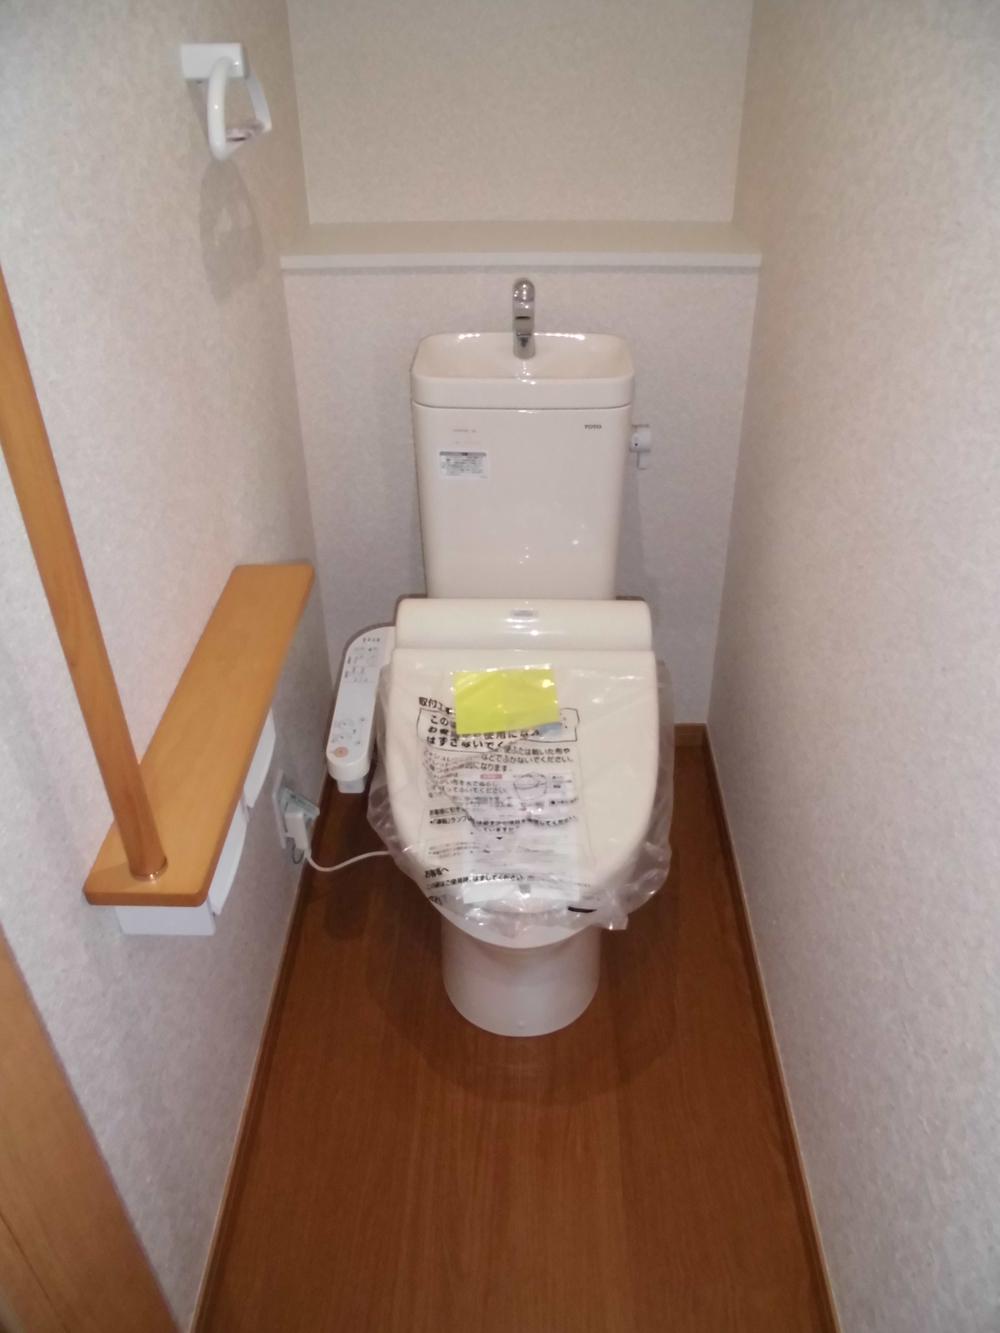 Toilet. Indoor (November 22, 2013) Shooting